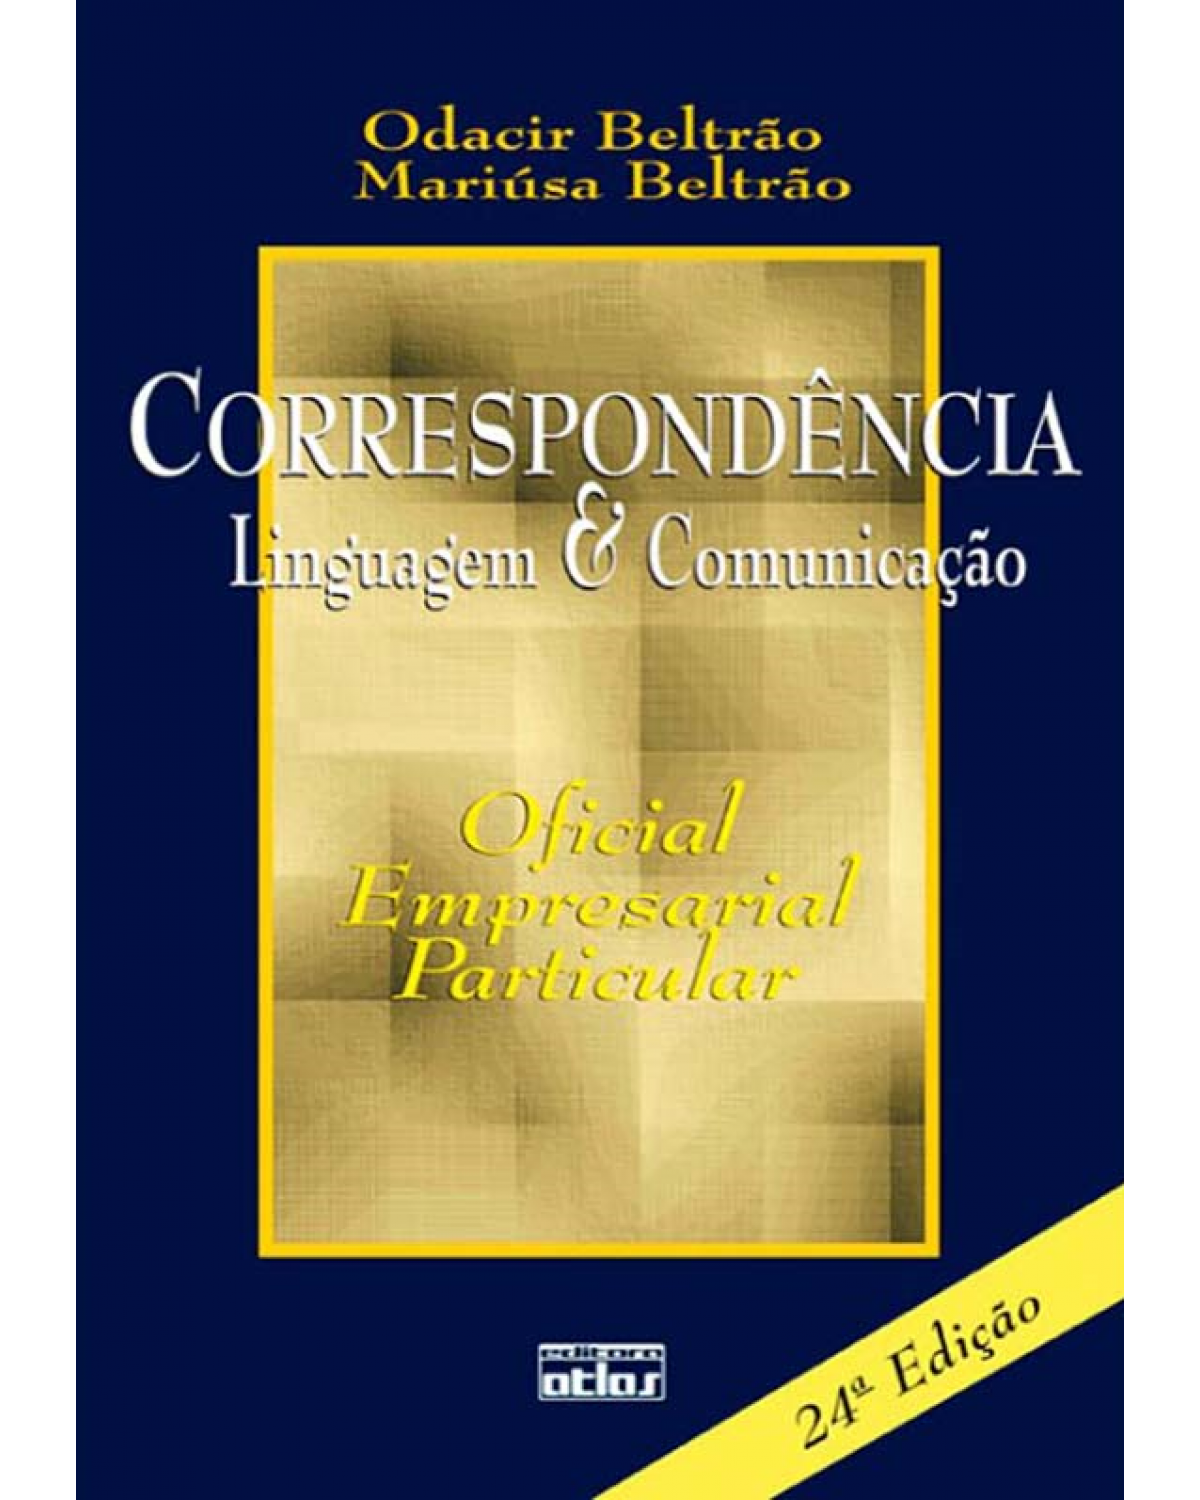 Correspondência - Linguagem e comunicação - Oficial, empresarial, particular - 24ª Edição | 2011